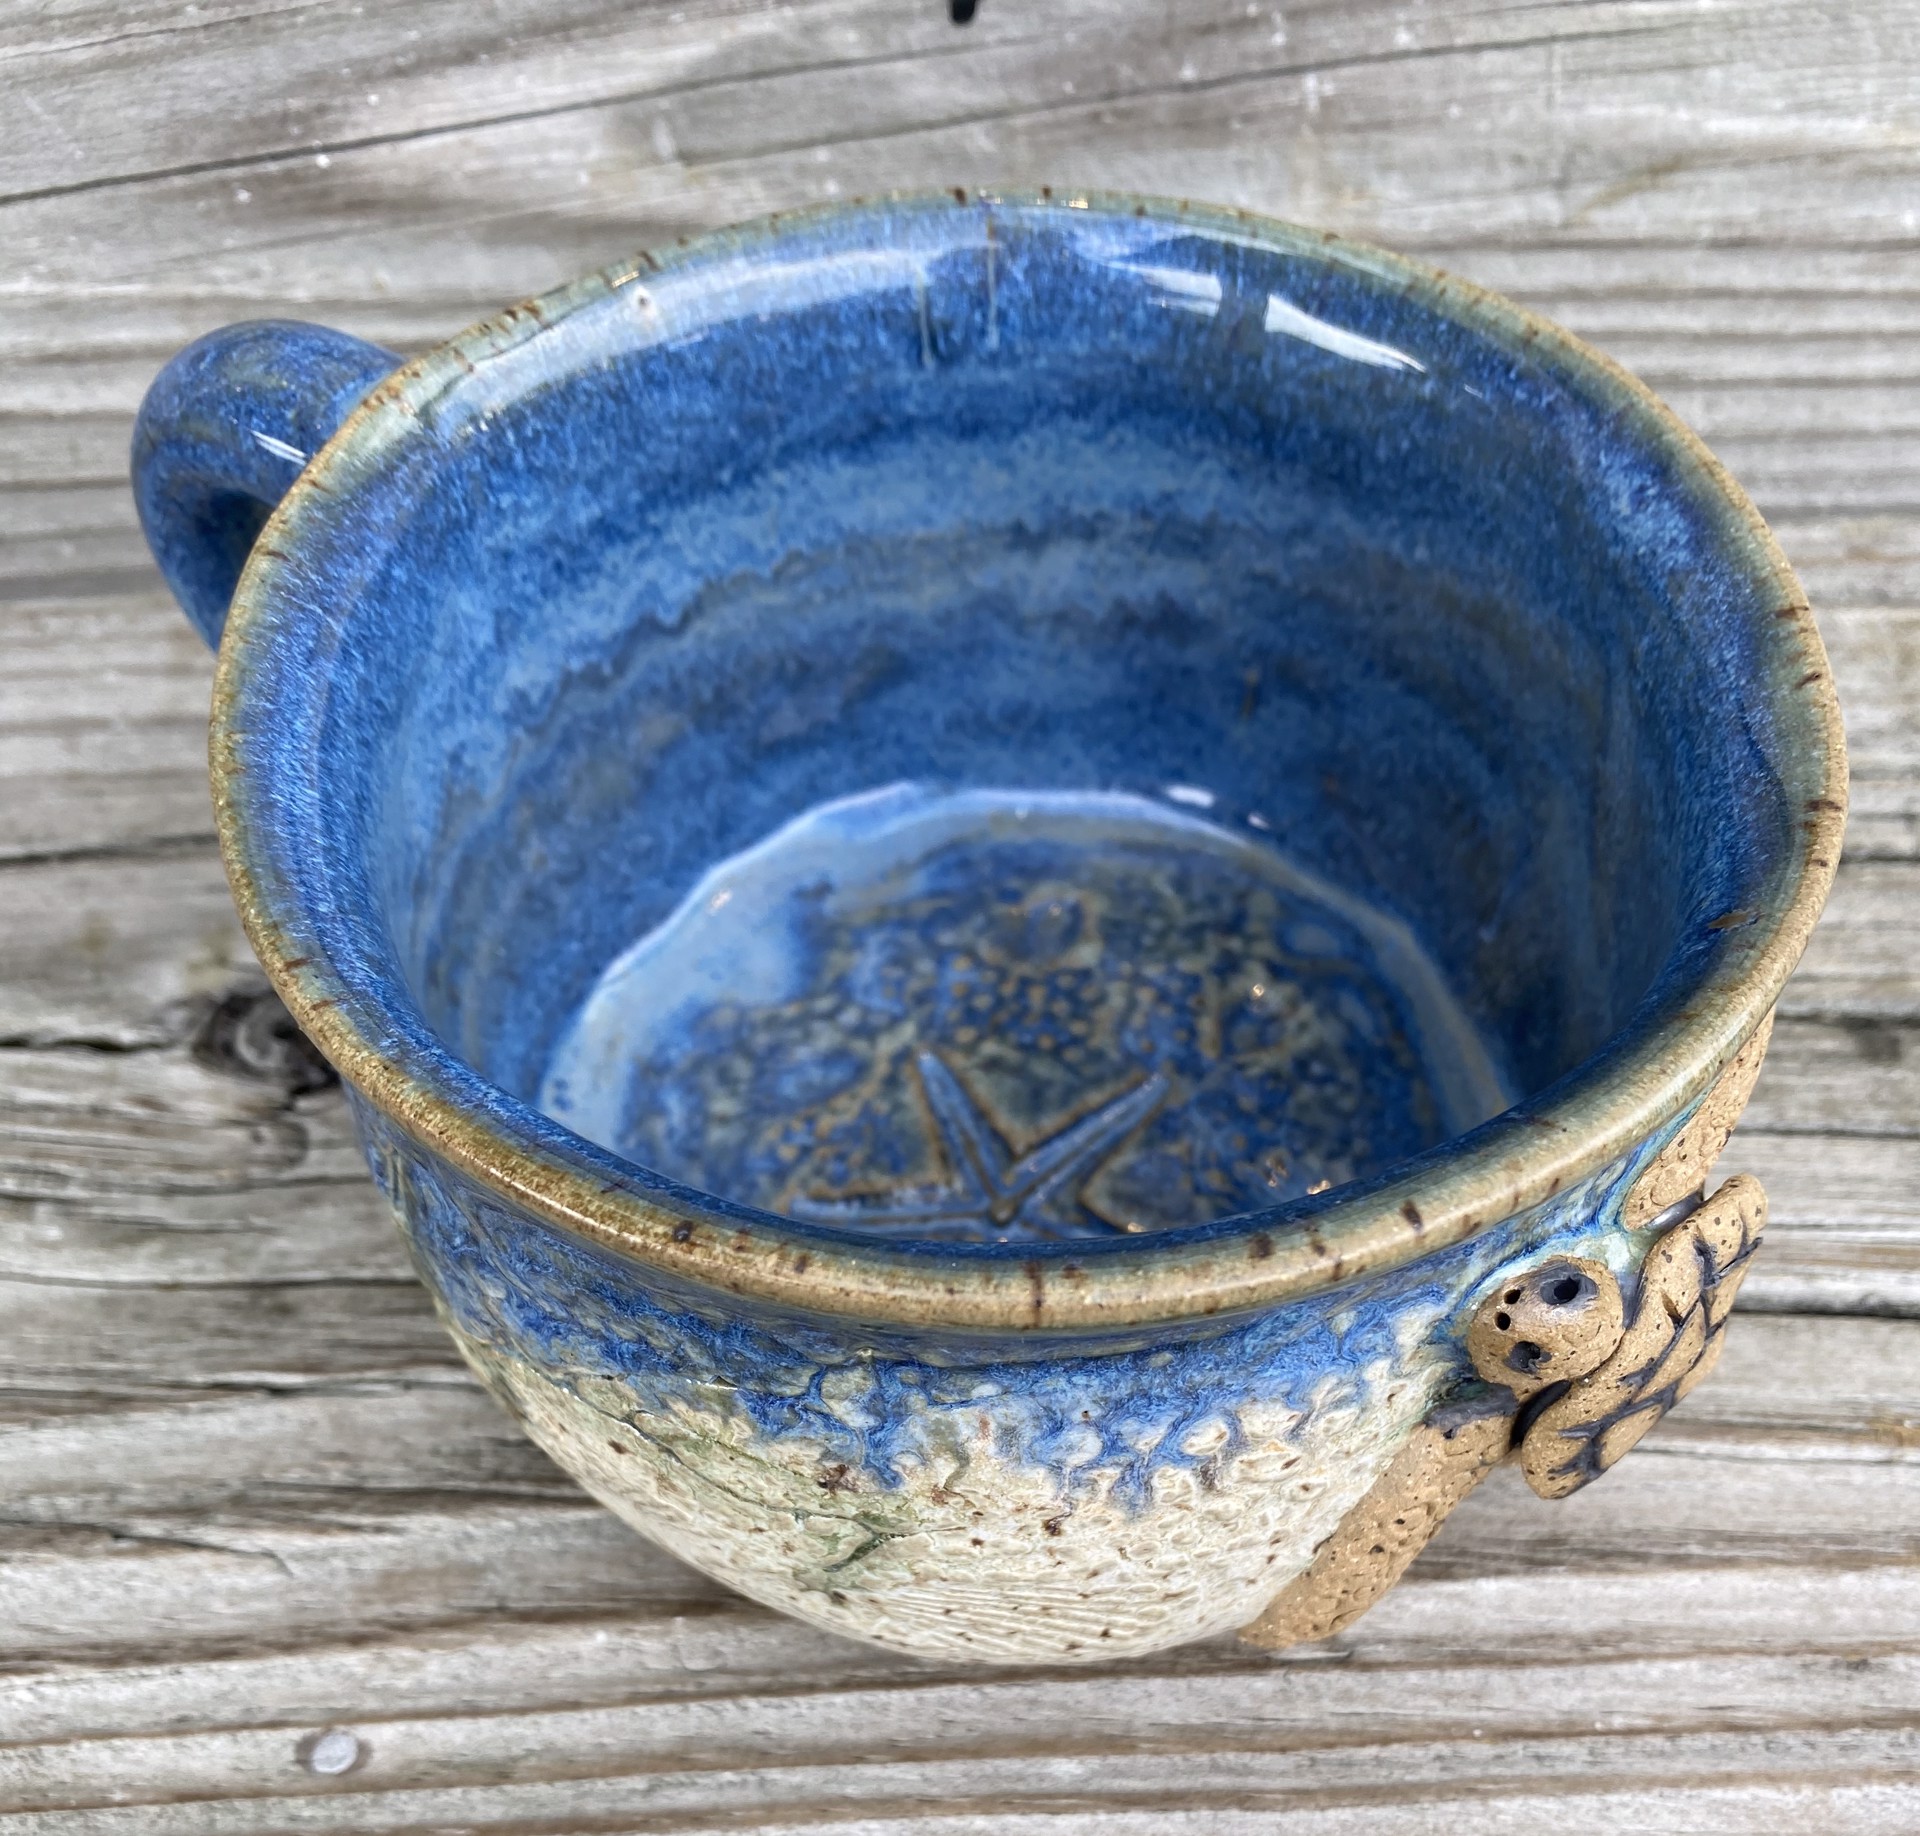 Turtle Soup Mug #281 by Jim & Steffi Logan